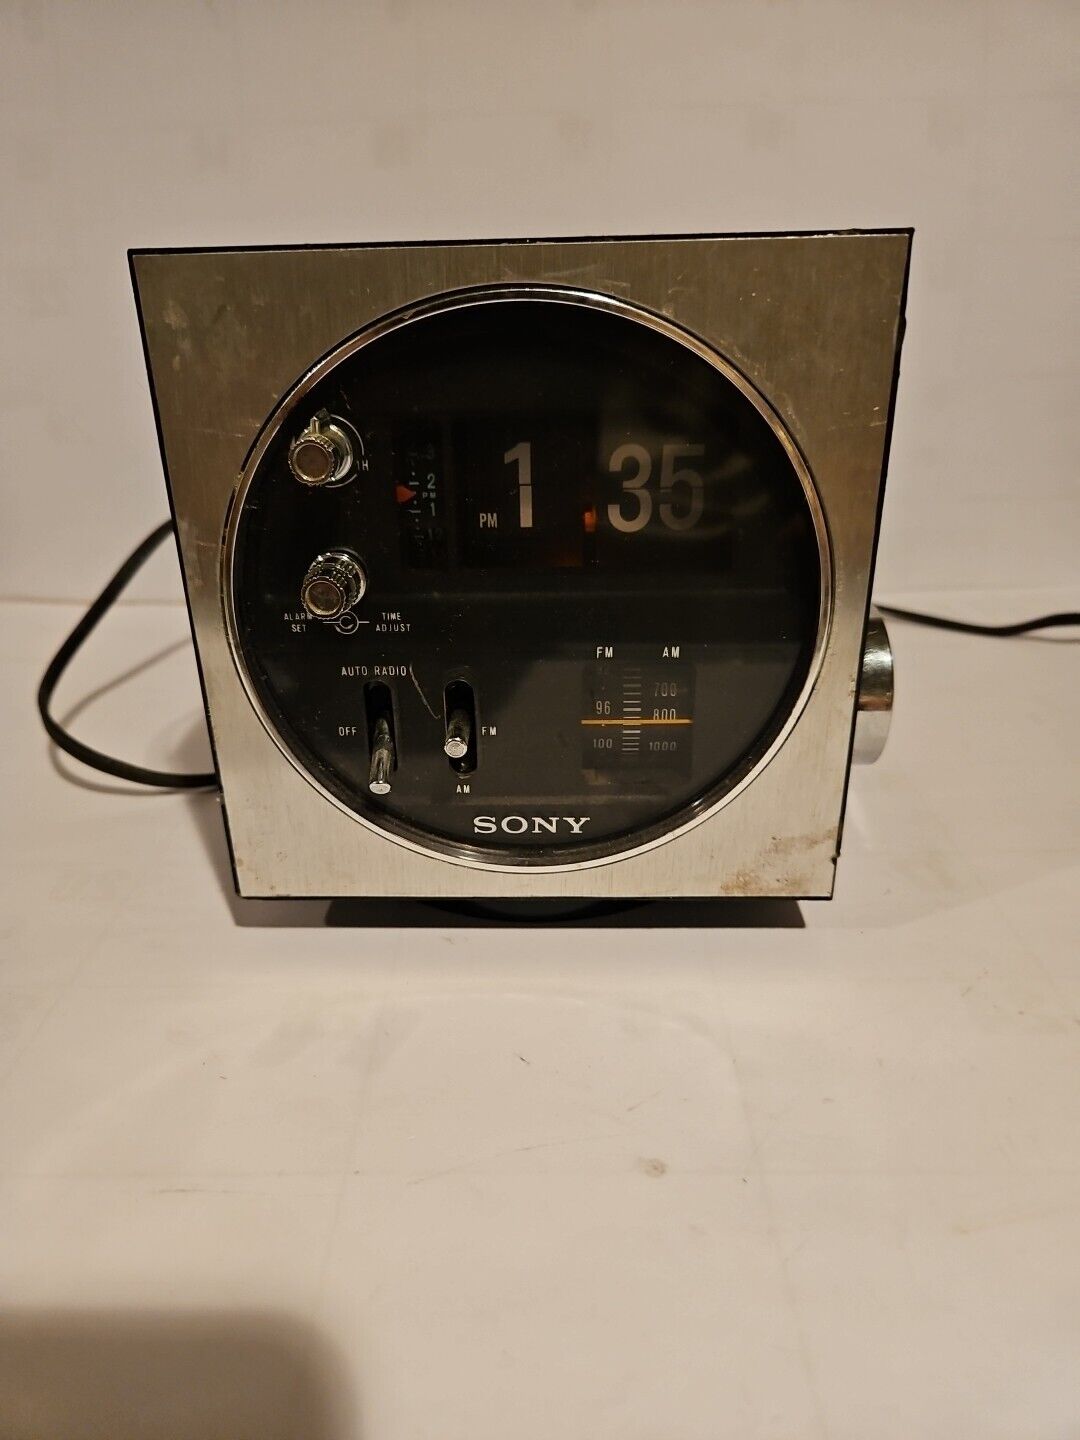 Sony TFM-C430W AM/FM Radio Alarm Clock Cube Working Tested